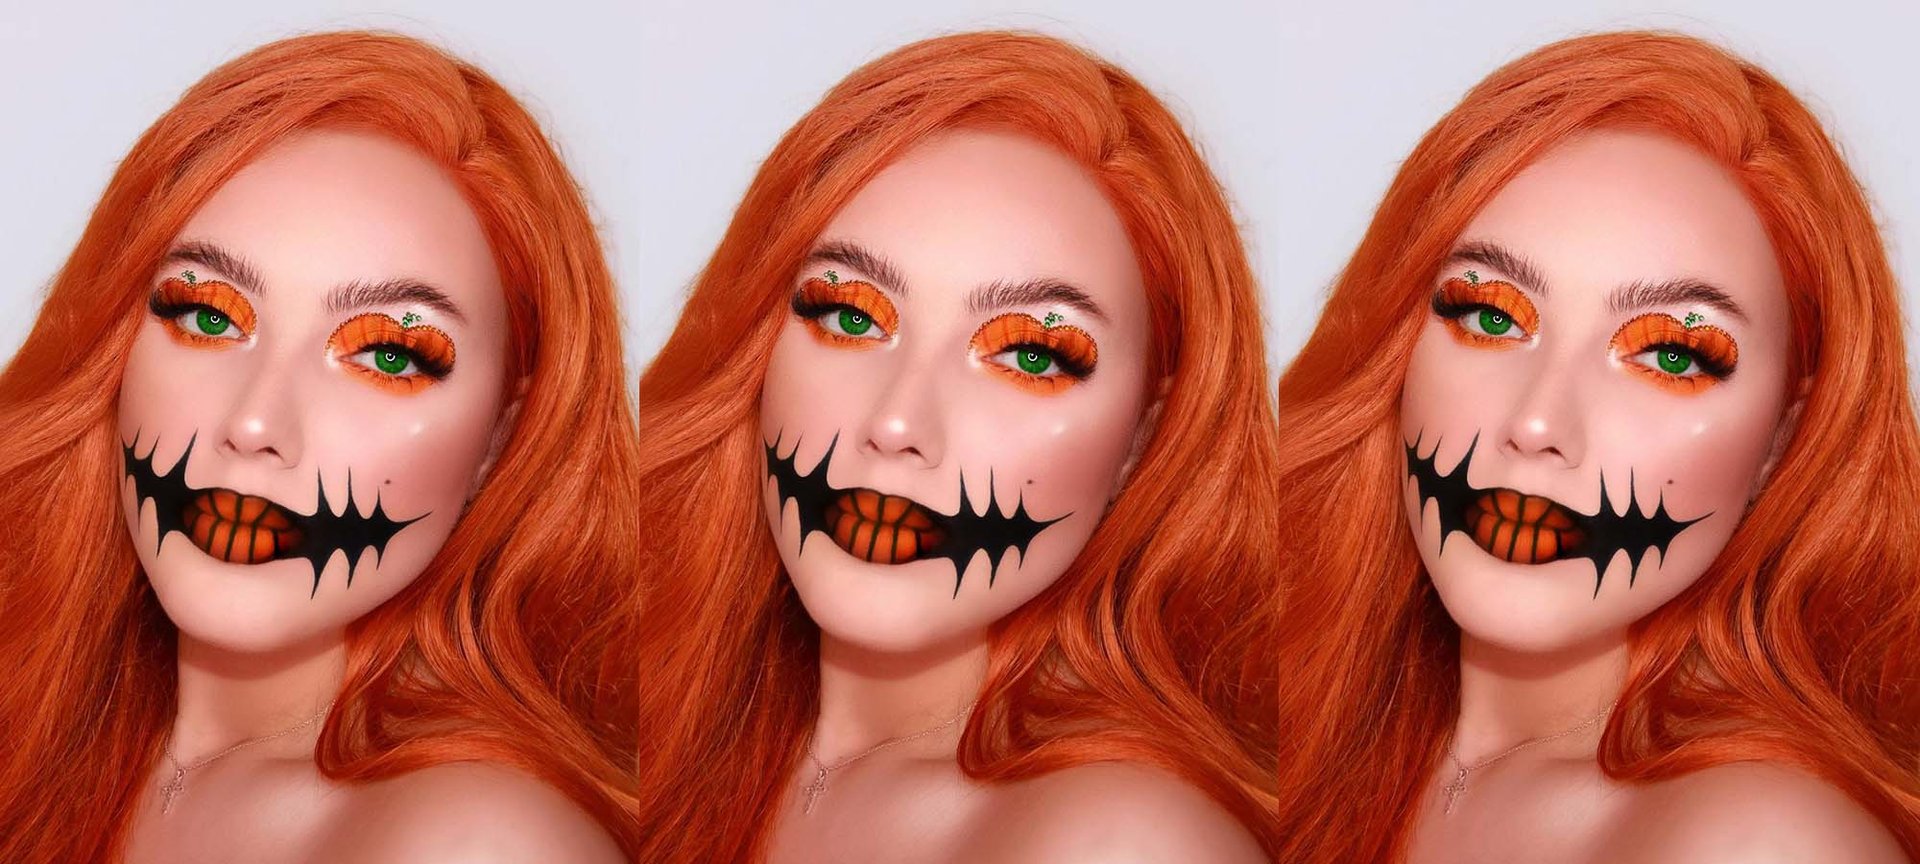 A Few Good Halloween Face Makeup Ideas